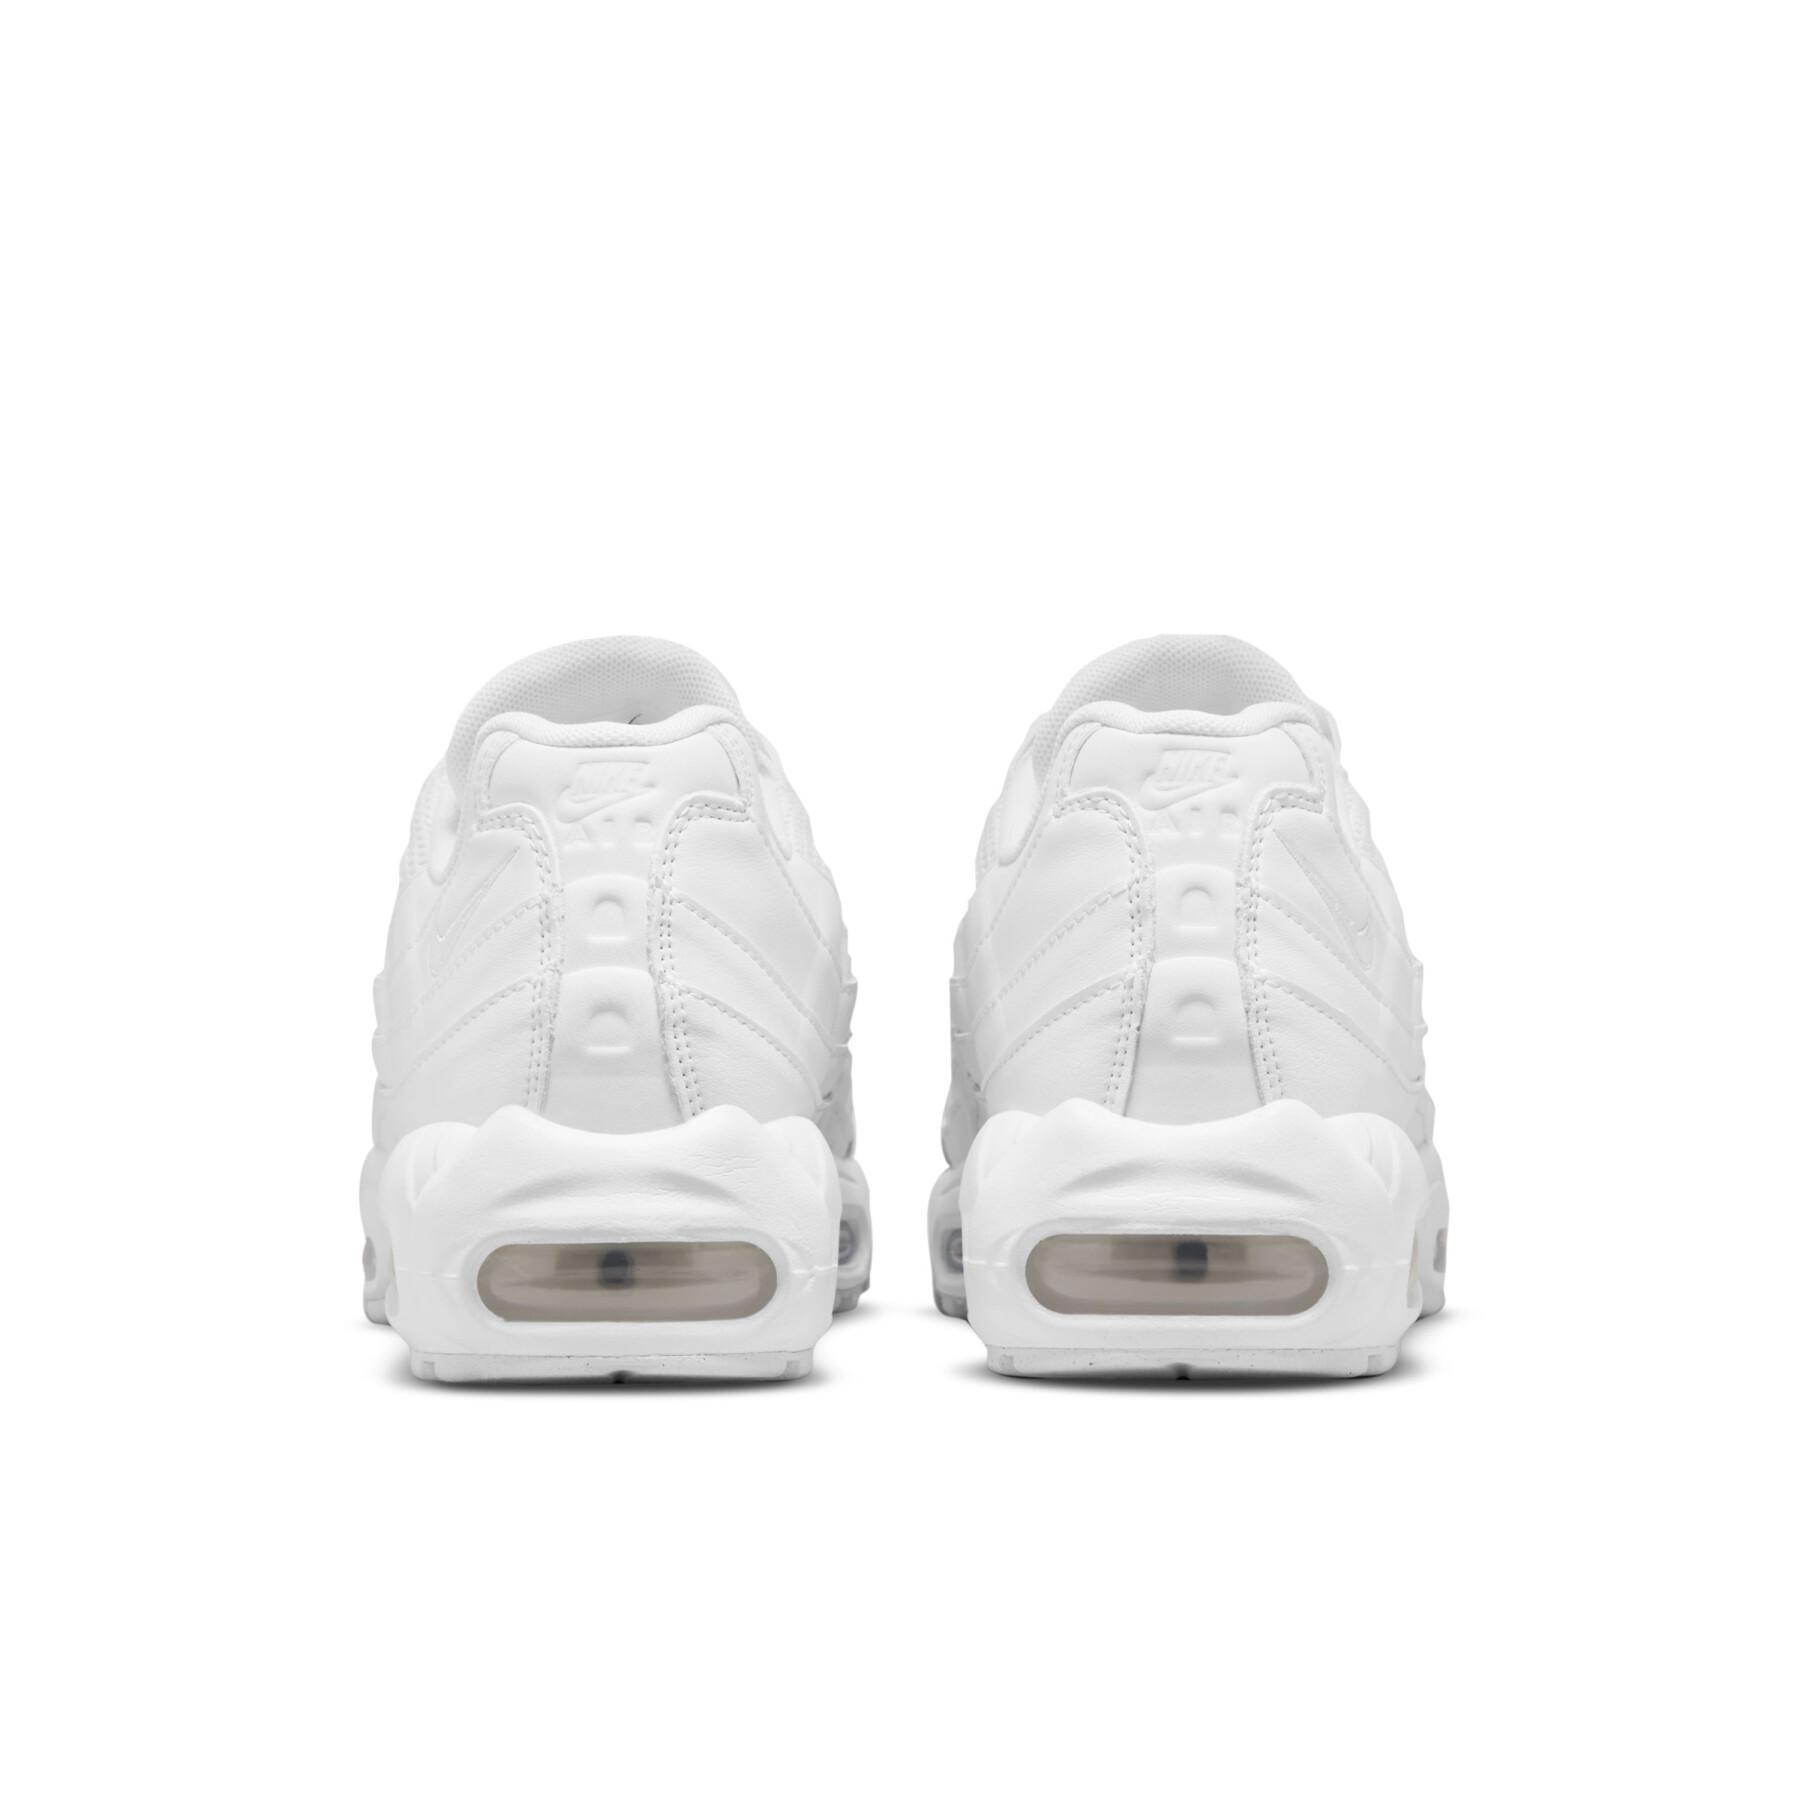 Sneakers Nike Air Max 95